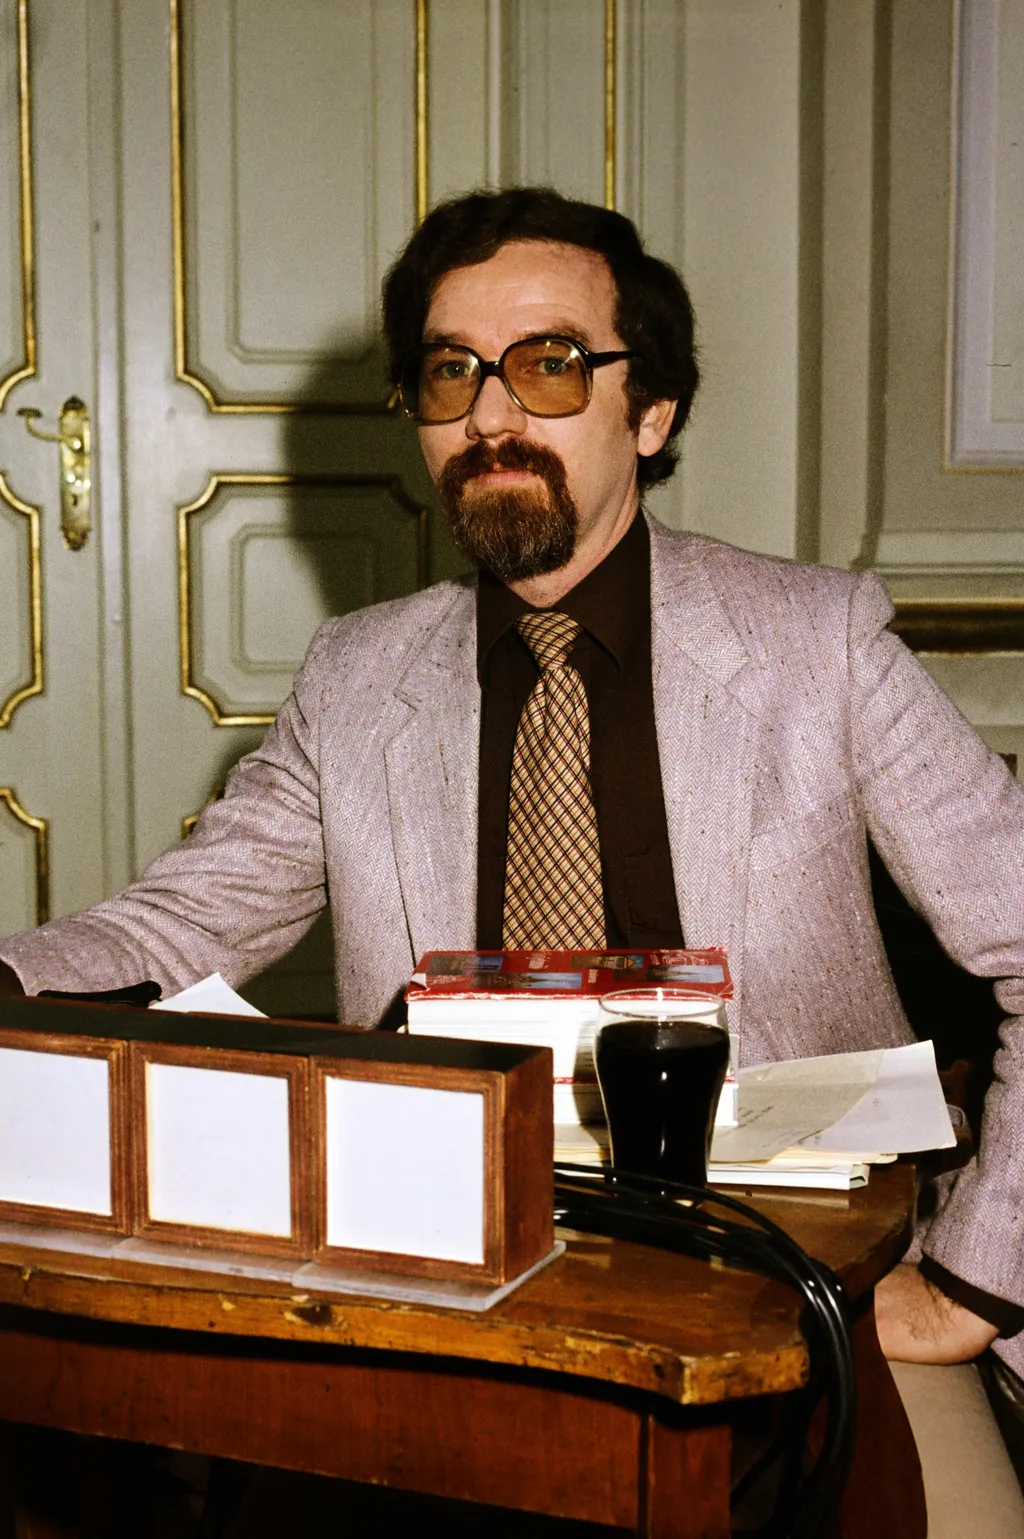 Vágó István televíziós műsorvezető,  Magyarország,
Budapest
Vágó István televíziós műsorvezető, szerkesztő.
ÉV
1982 